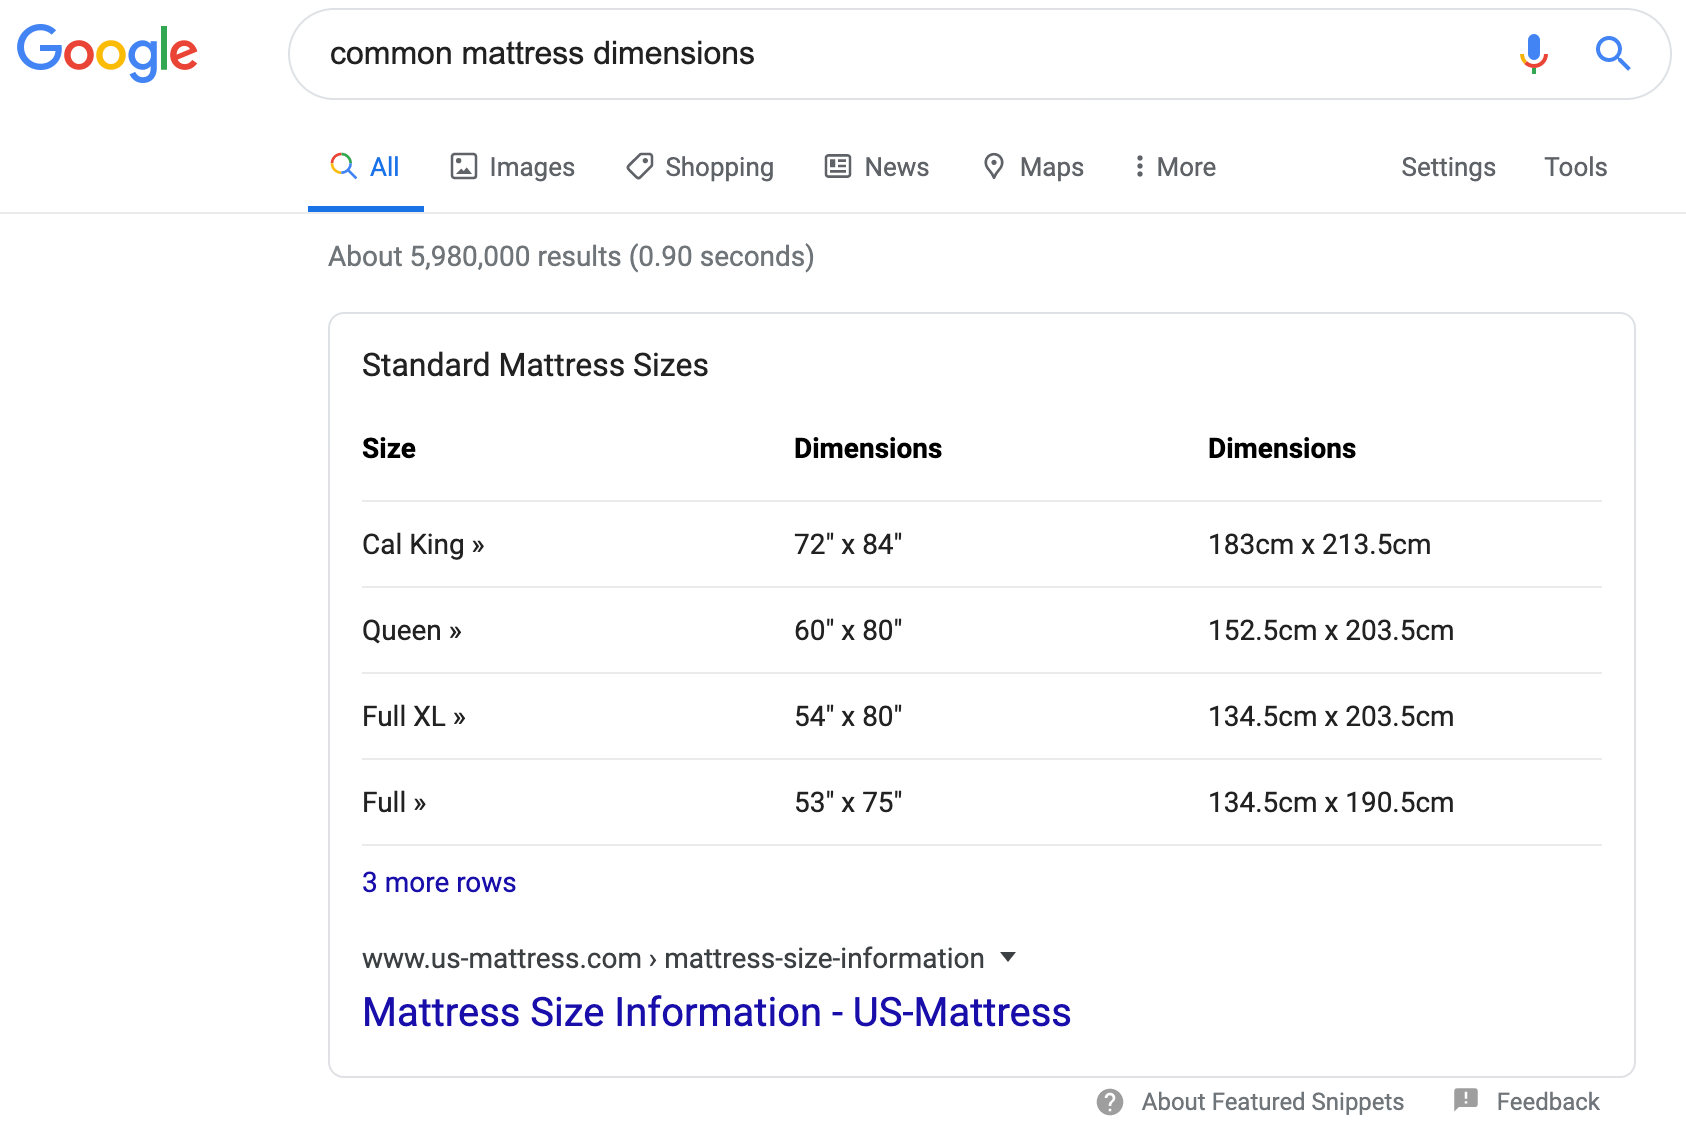 common mattress dimensions - Google Search